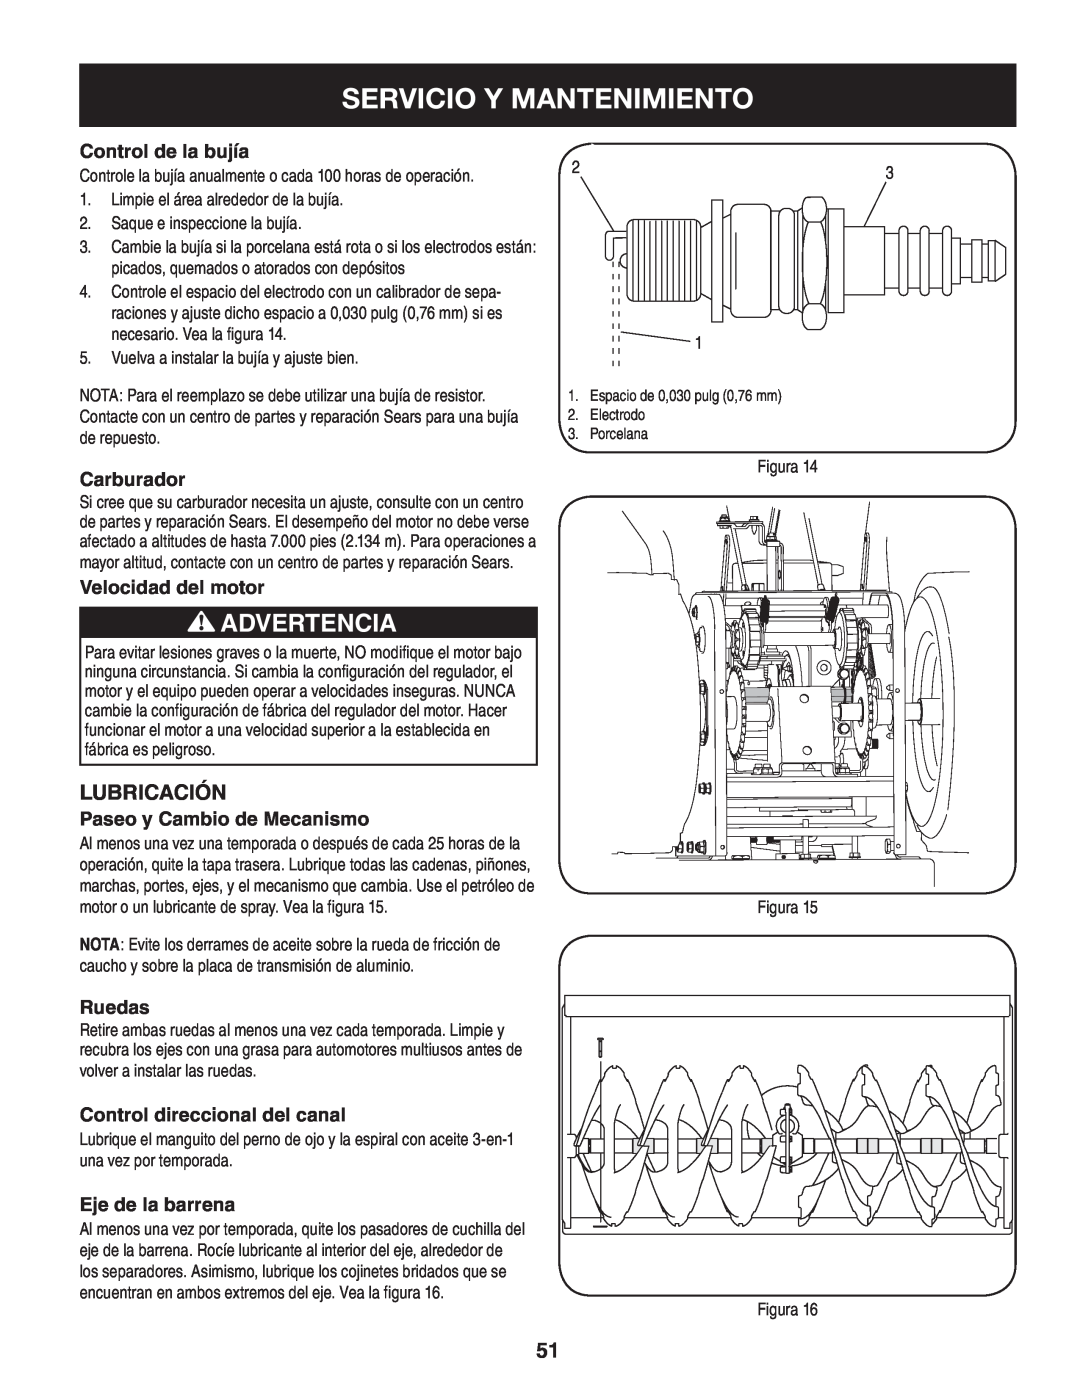 Craftsman 247.88045 manual Servicio Y Mantenimiento, Advertencia, Lubricación, Control de la bujía, Carburador, Ruedas 